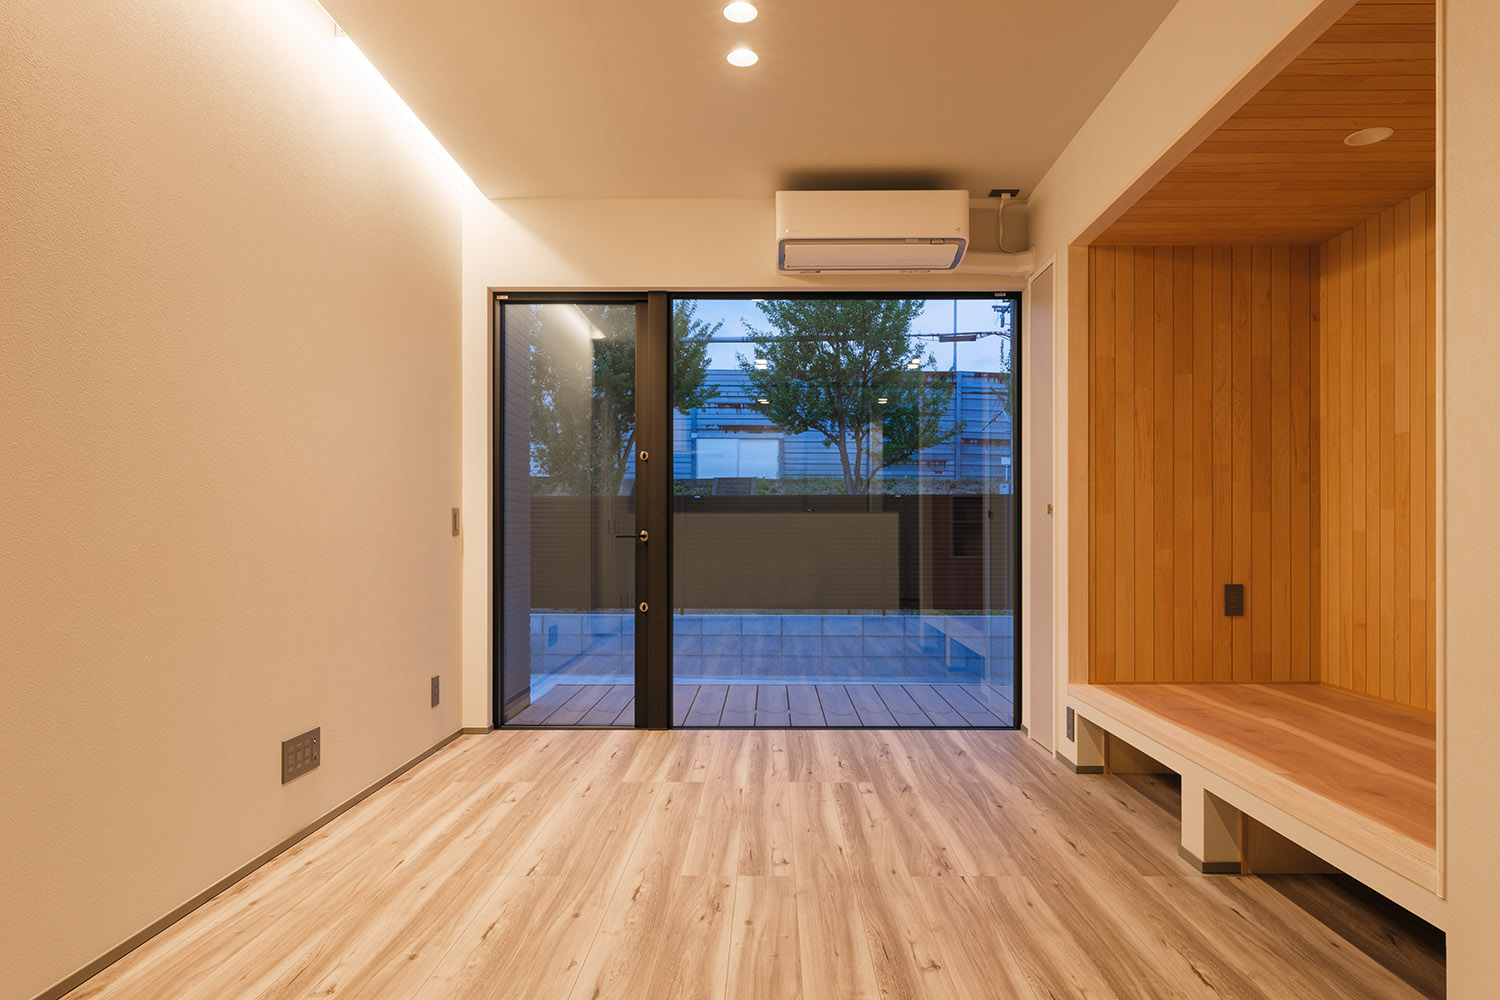 壁際の間接照明と天井のダウンライトに照らされるLDK・デザイン住宅